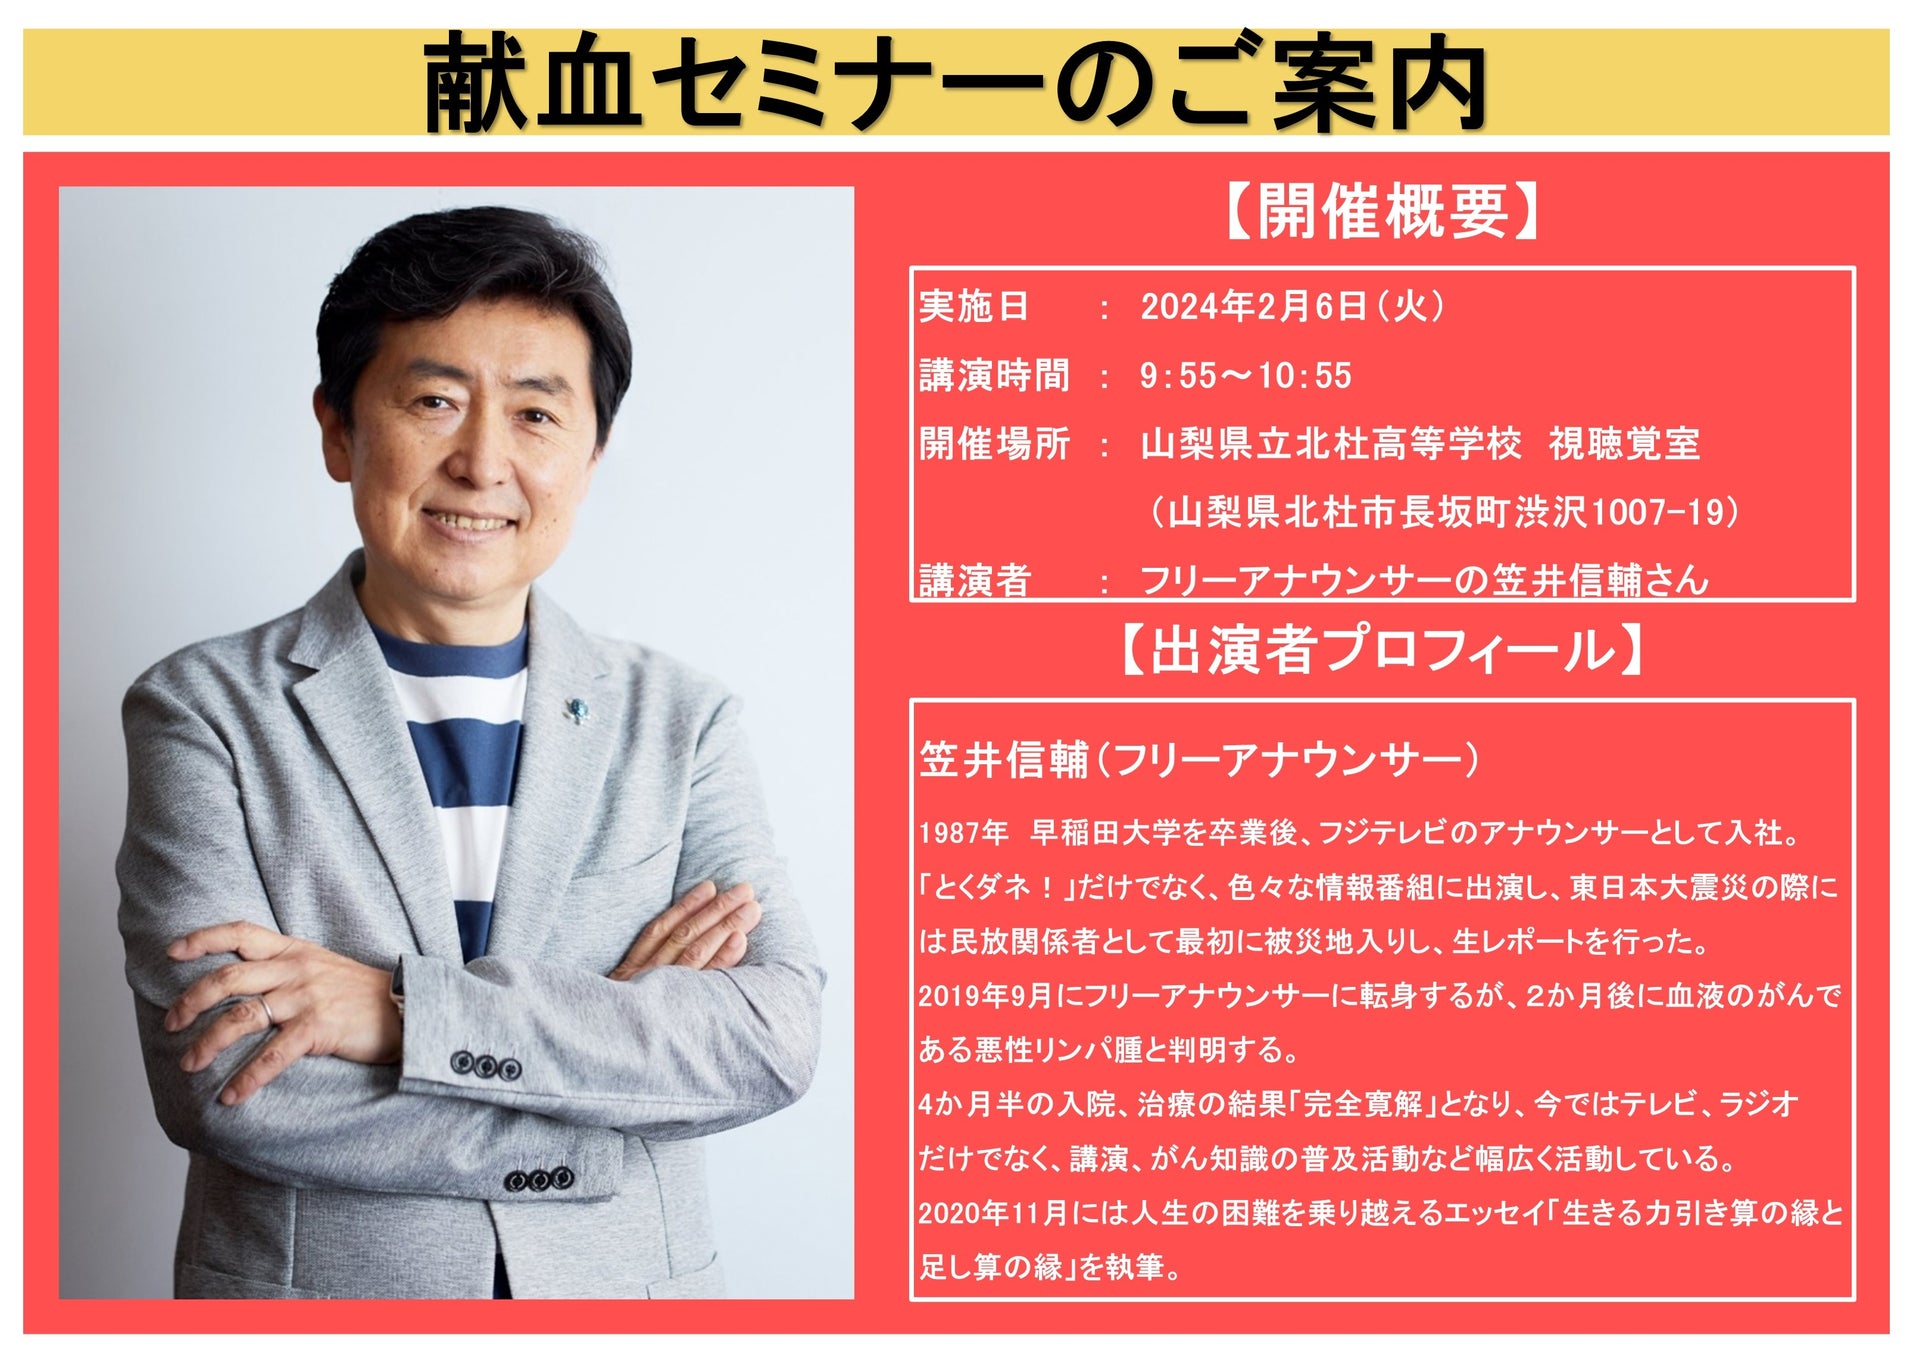 【山梨県】フリーアナウンサーの笠井信輔さんによる「献血セミナー」開催